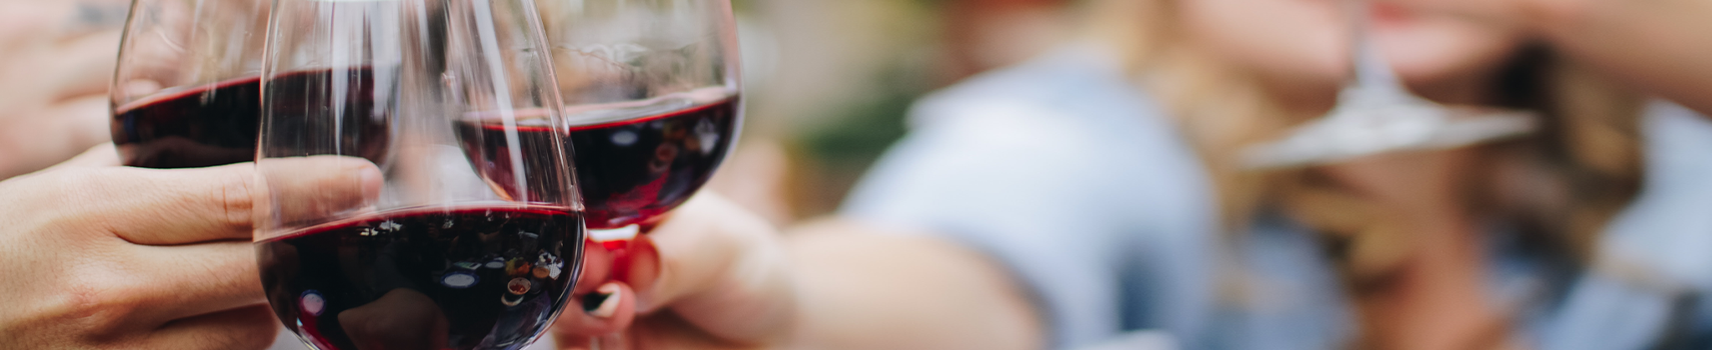 Vinos con DOP | Compra online Vinos tintos  y vinos blancos gallegos y de España